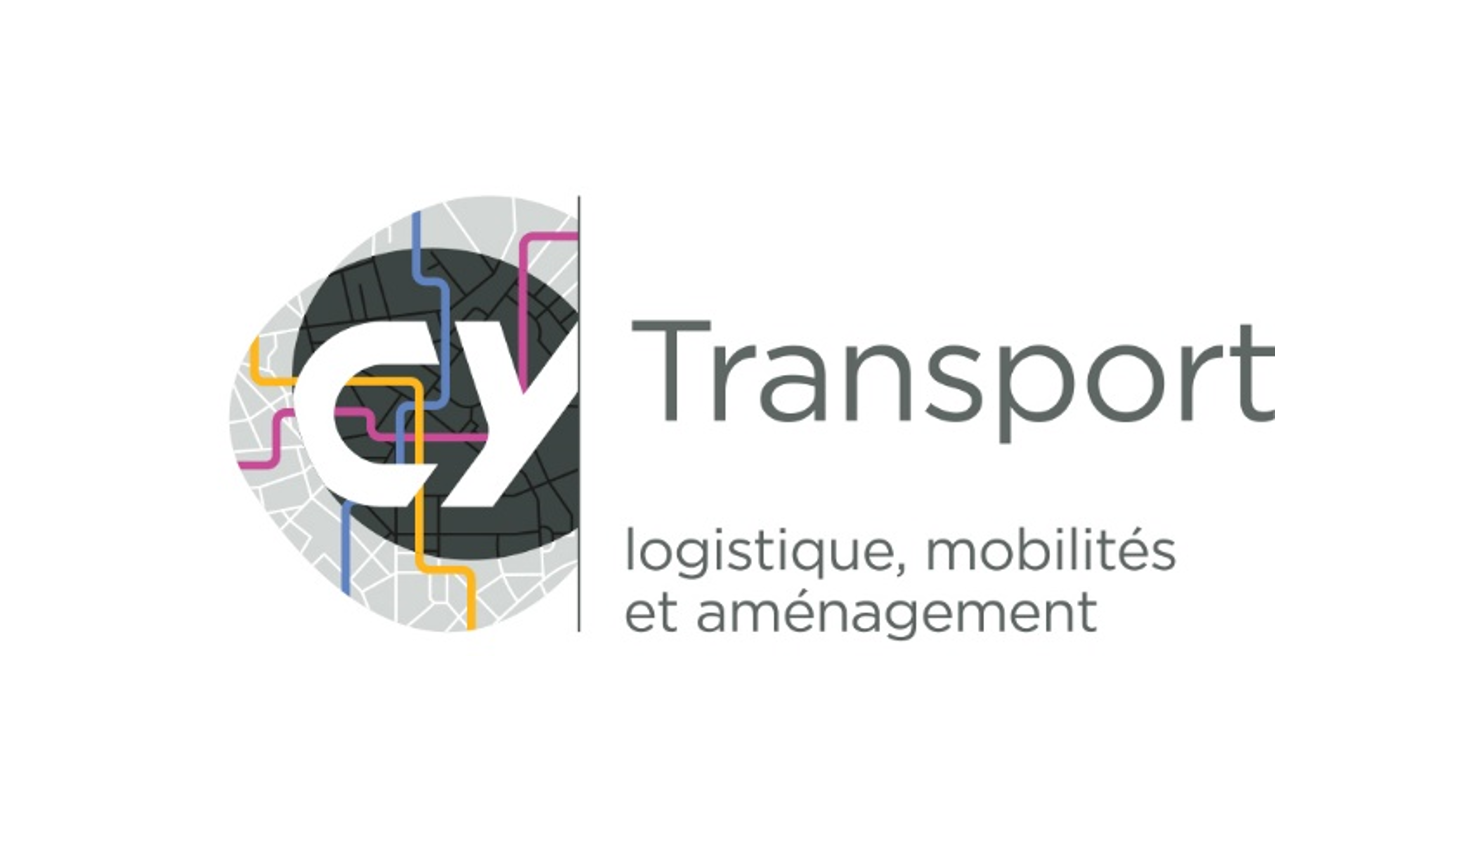 CY Transport - une nouvelle école d'application pour CY Cergy Paris Université